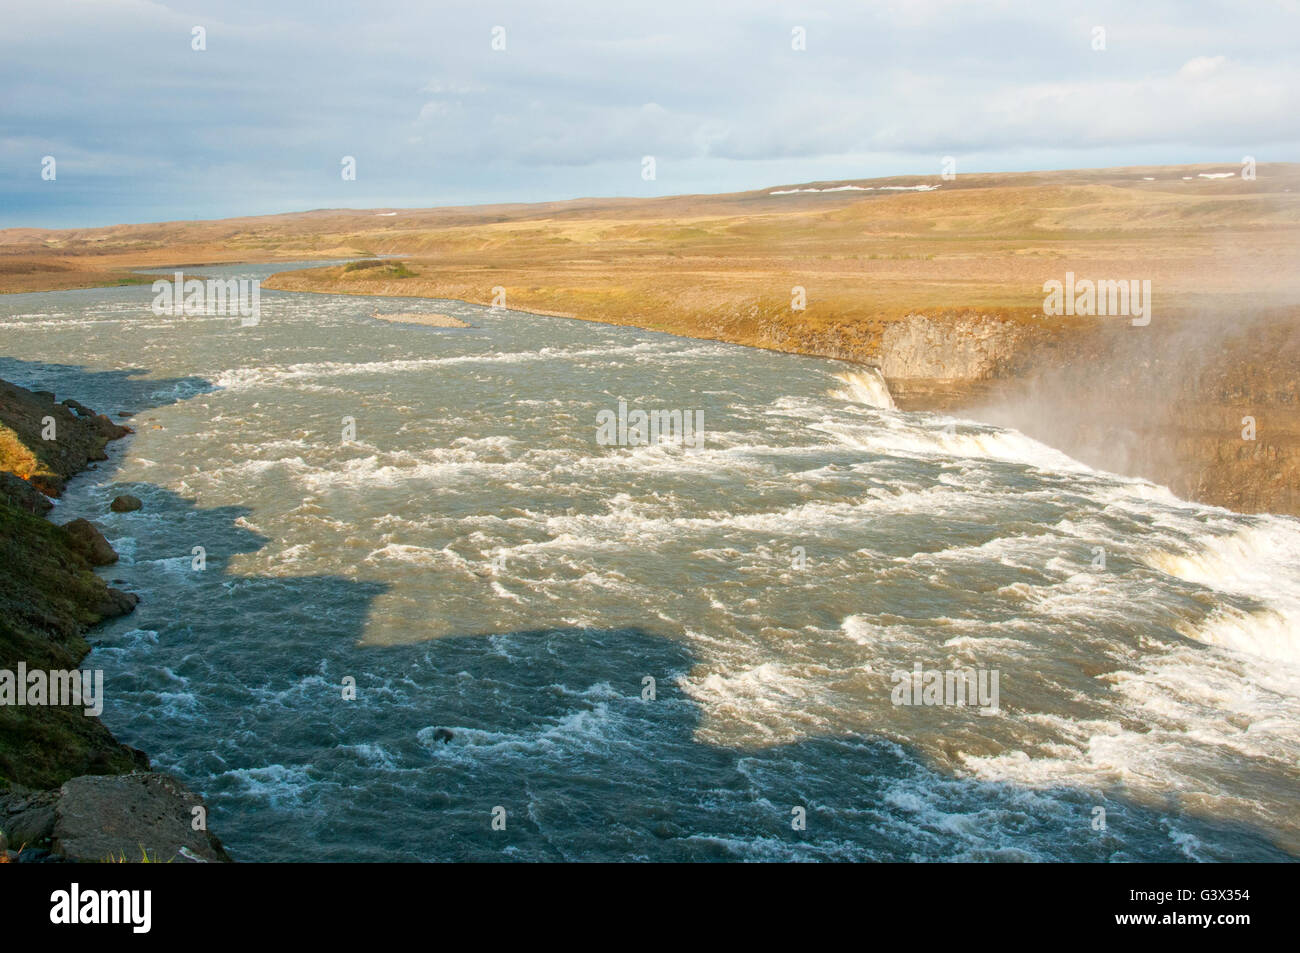 Cascade de Gullfoss Islande Hvítá Haukadalur Banque D'Images